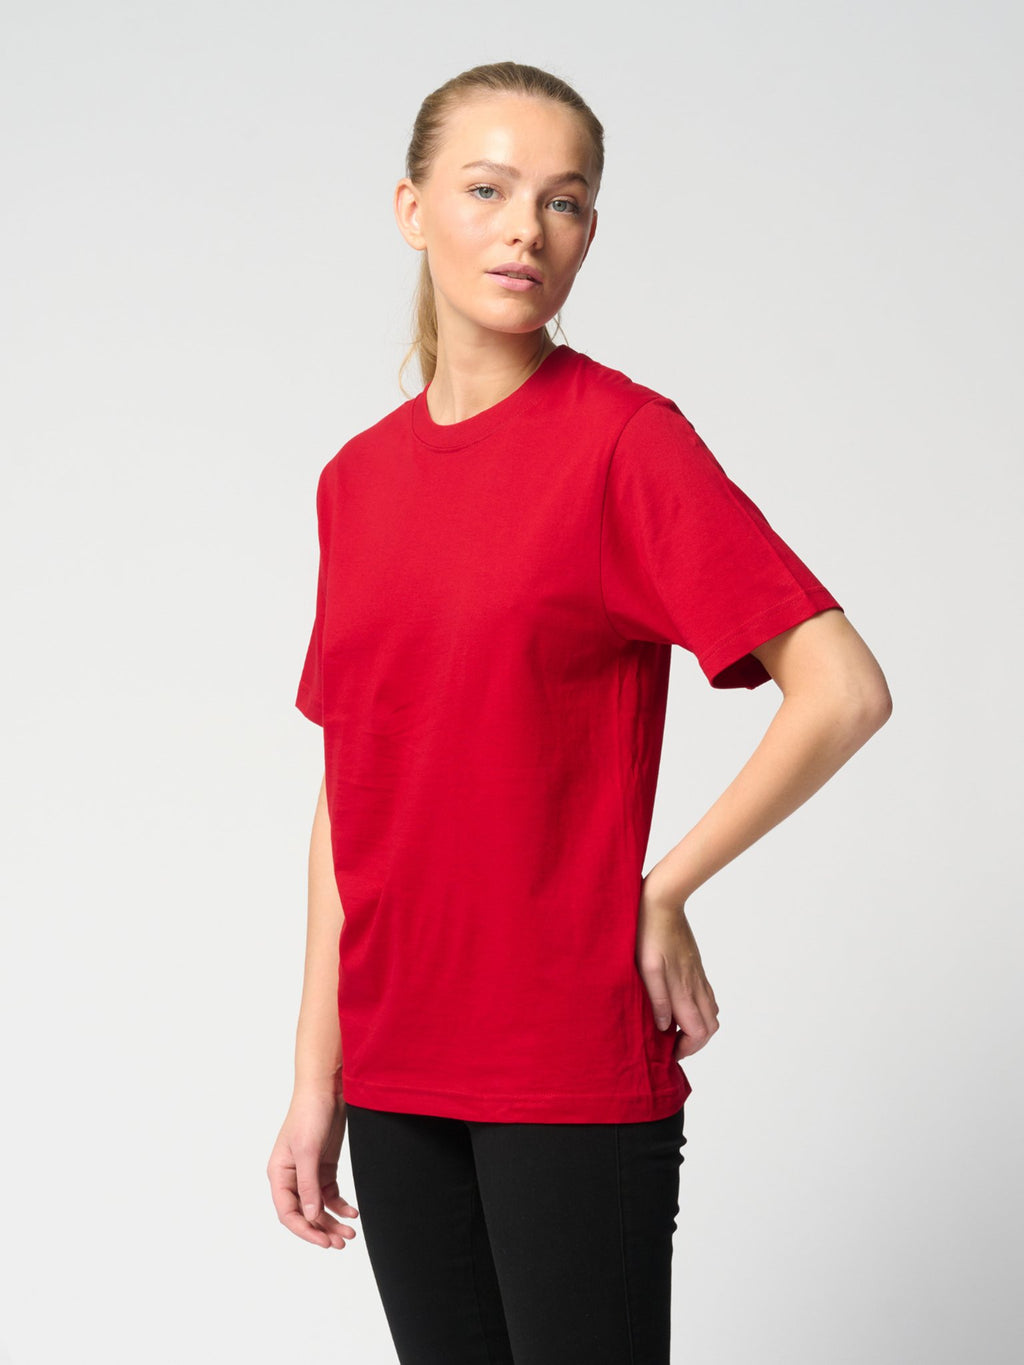 Nadmerné tričko - červené